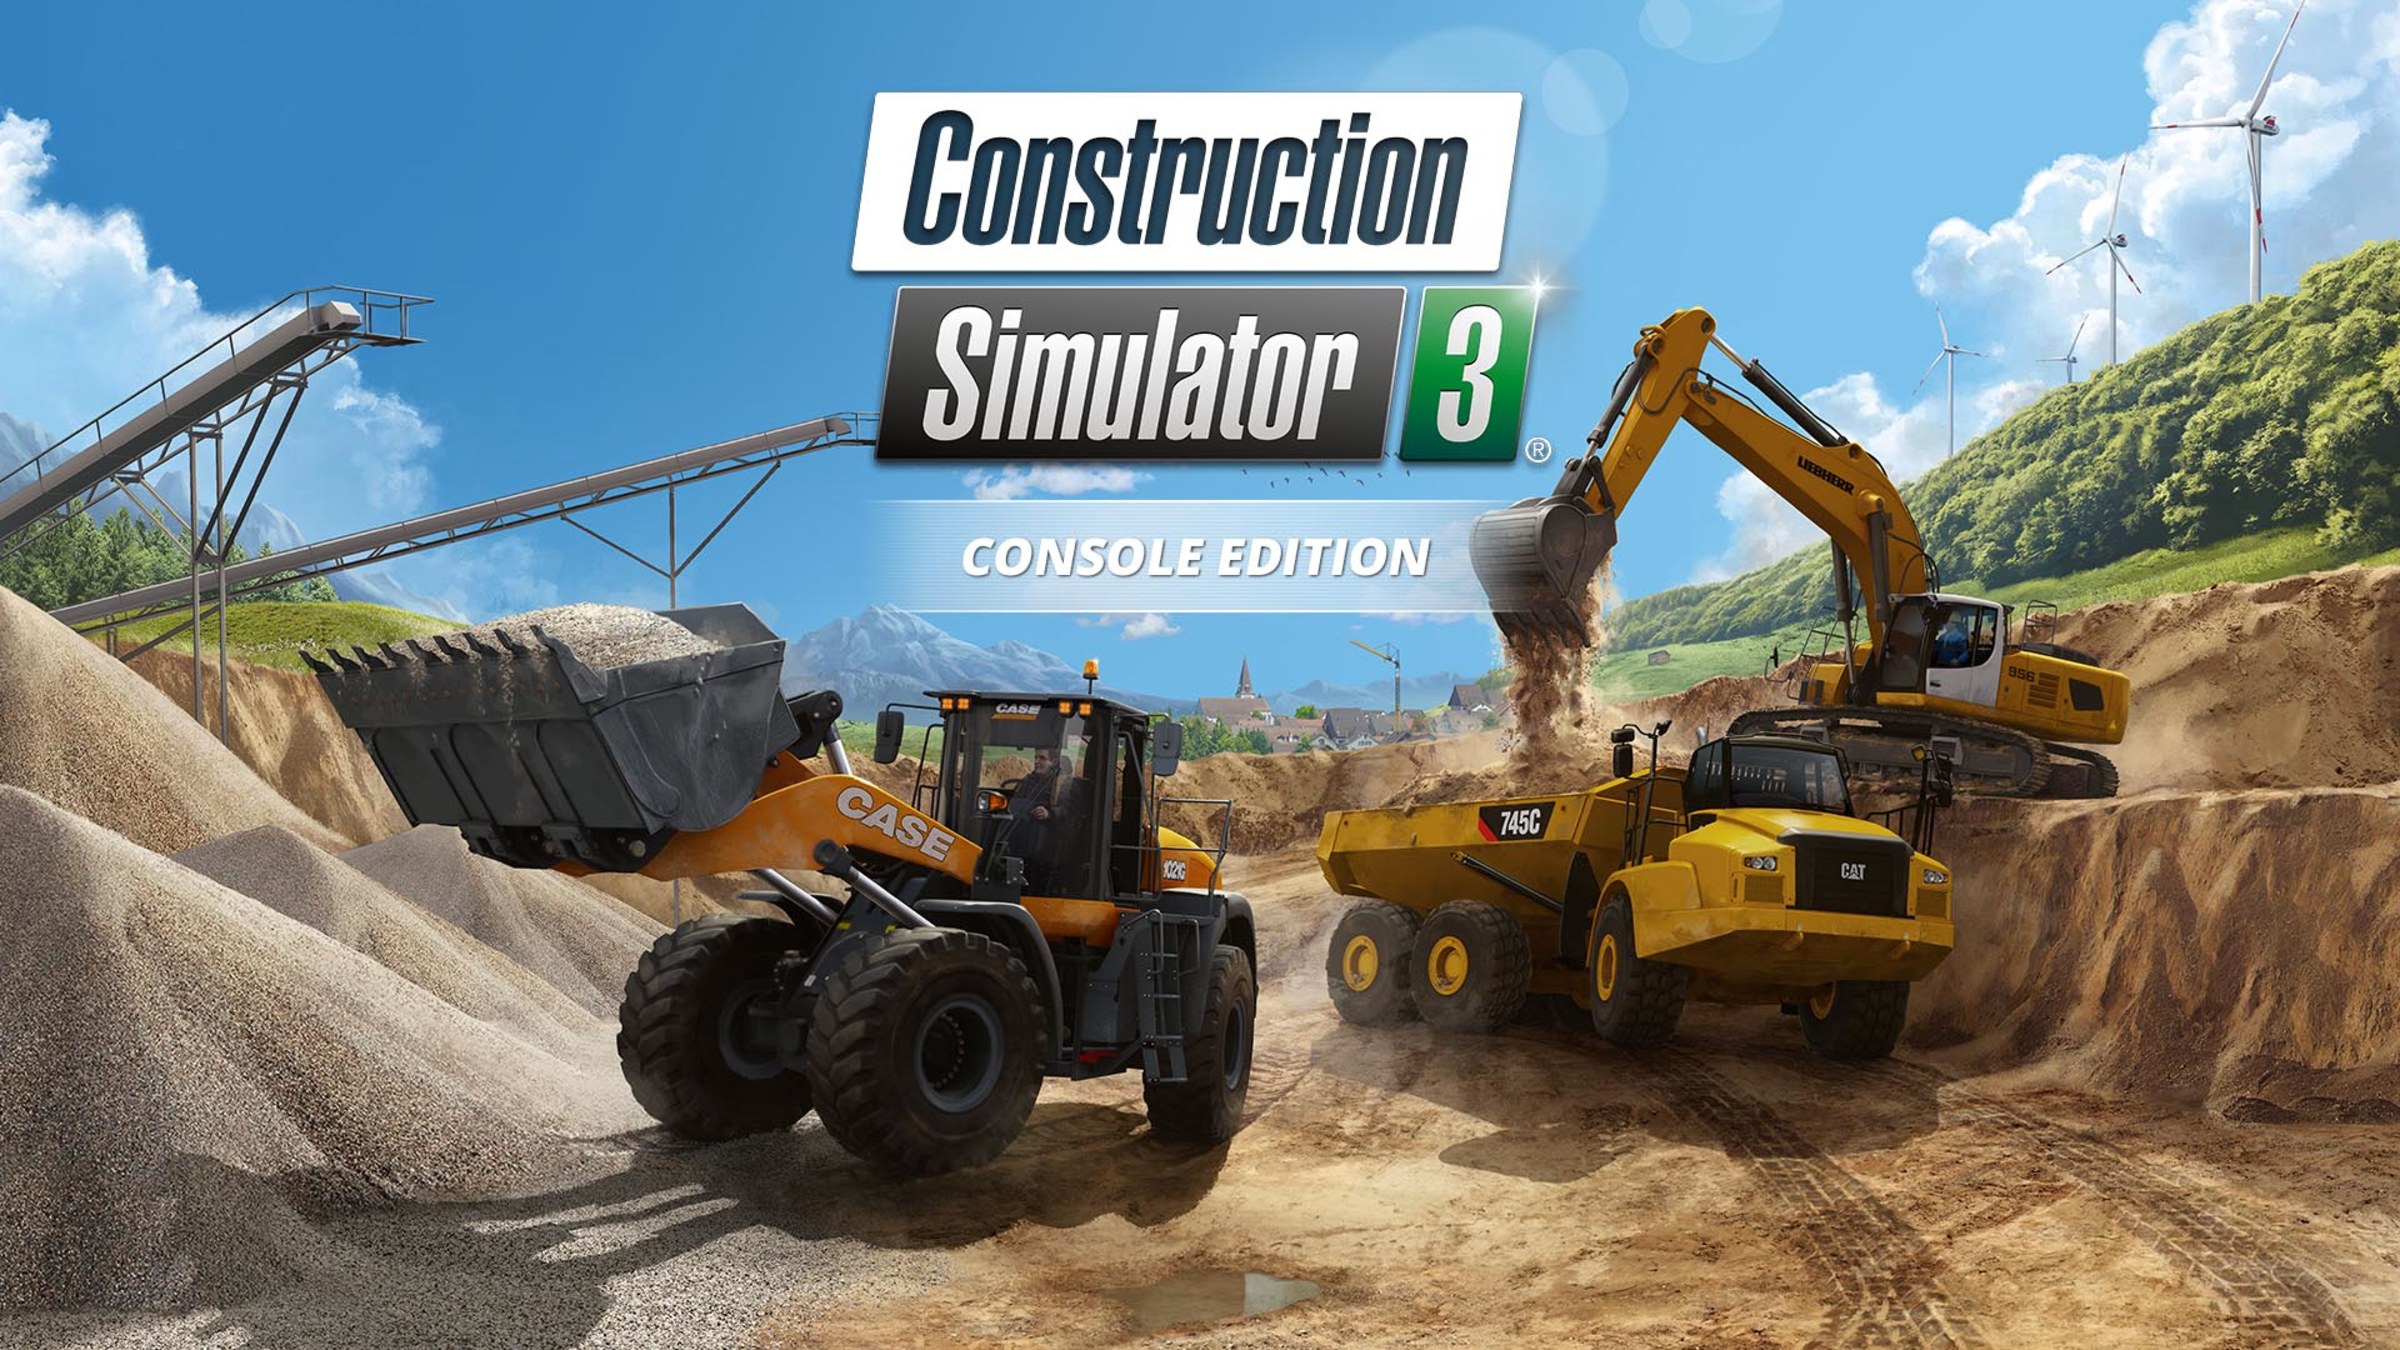 Game Simulator terbaik-Construction Simulator 3